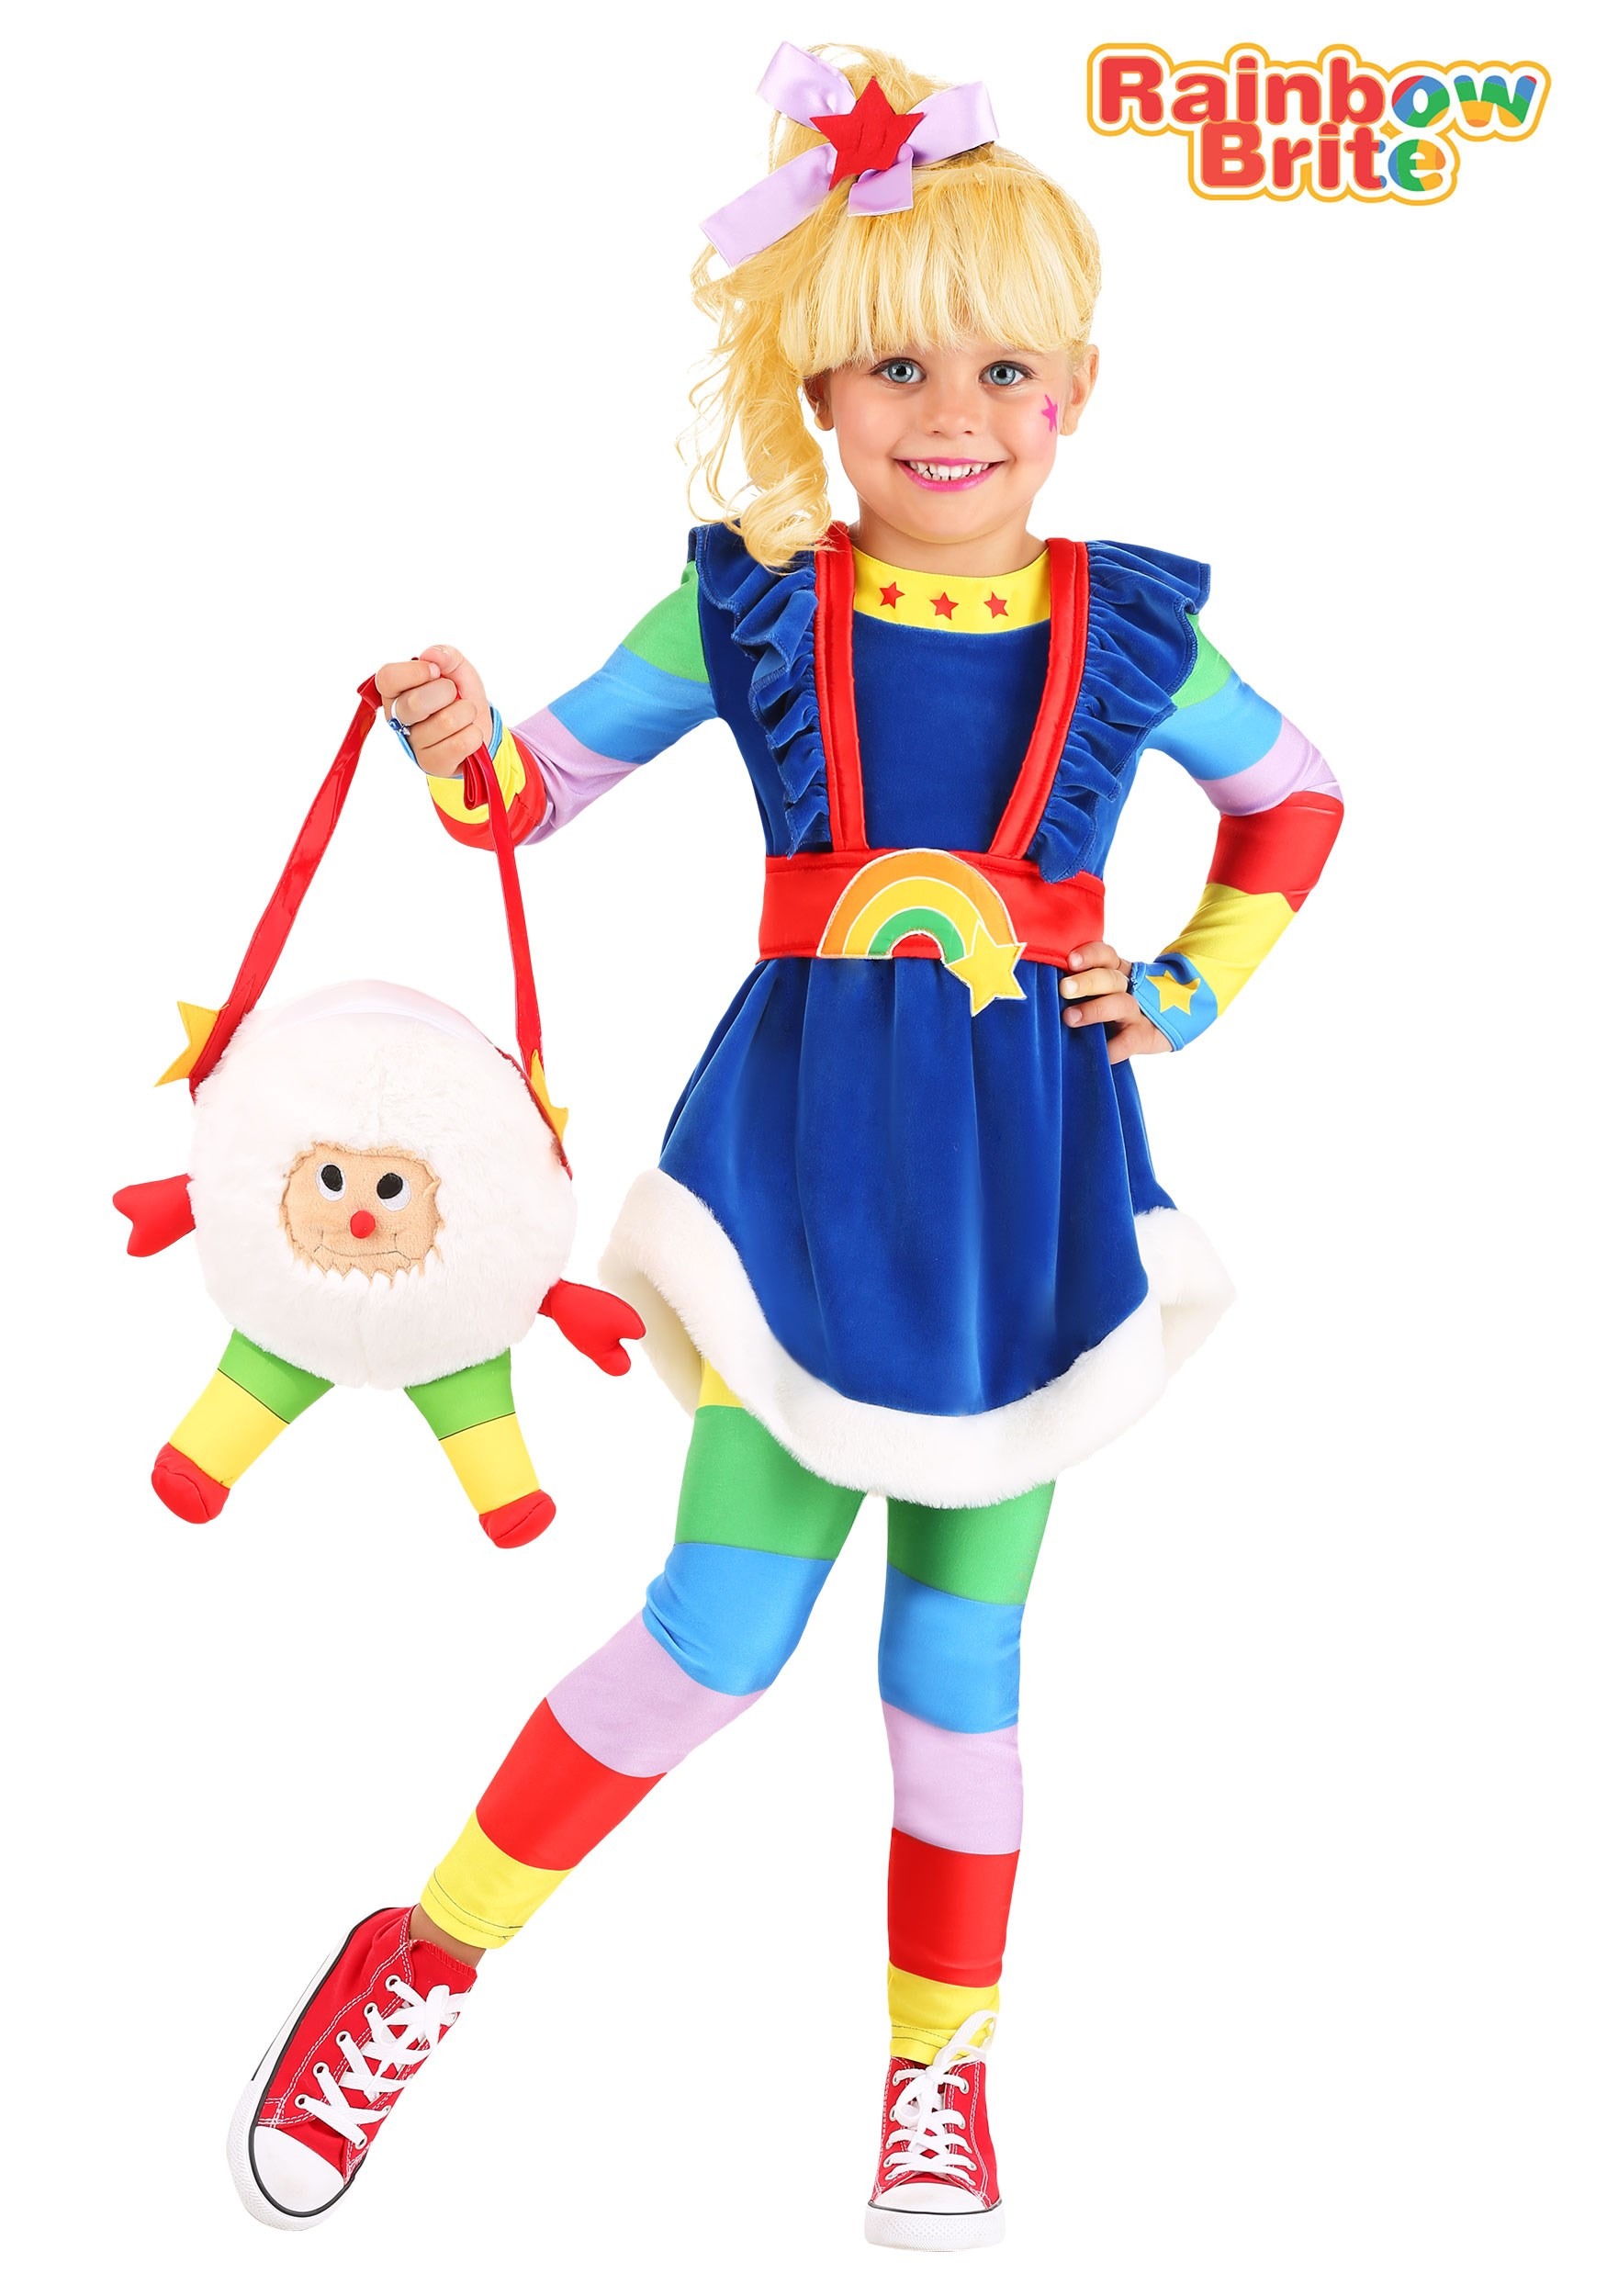 Rainbow Brite « Crawl Rainbow Brite Costume for Toddlers Homemade Rainbow.....